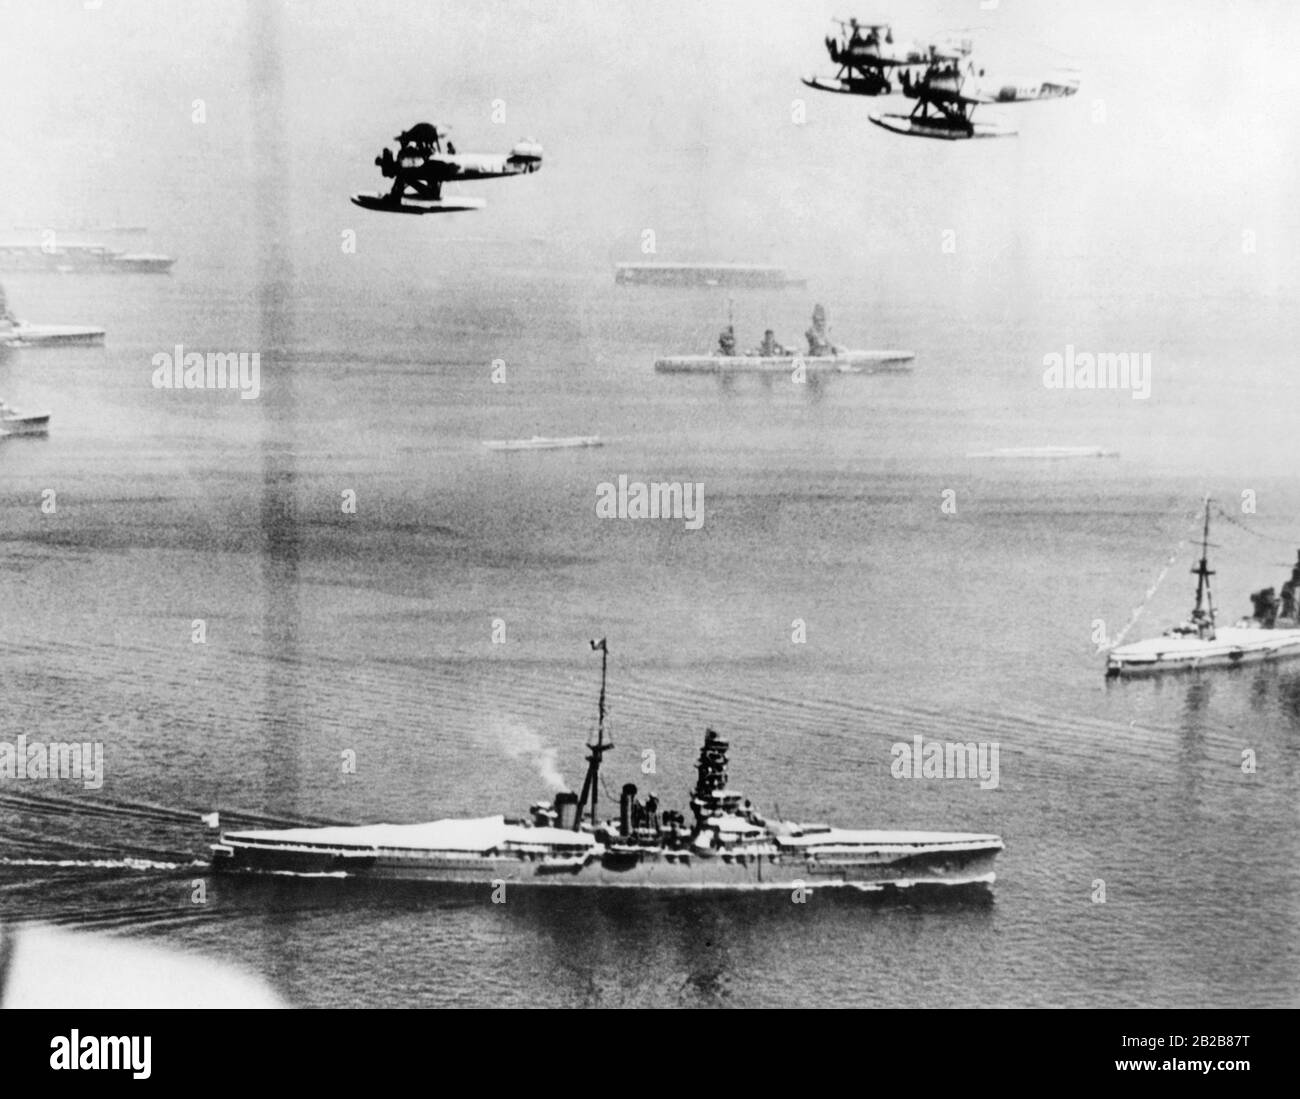 Vista sul mare vicino a Yokohama in Giappone durante una sfilata della Marina Imperiale Giapponese il 28 agosto 1939. In primo piano ci sono diversi cacciatorpediniere della Marina e aerei che volano sopra. In background nella nebbia sono due vettori aerei. Foto Stock